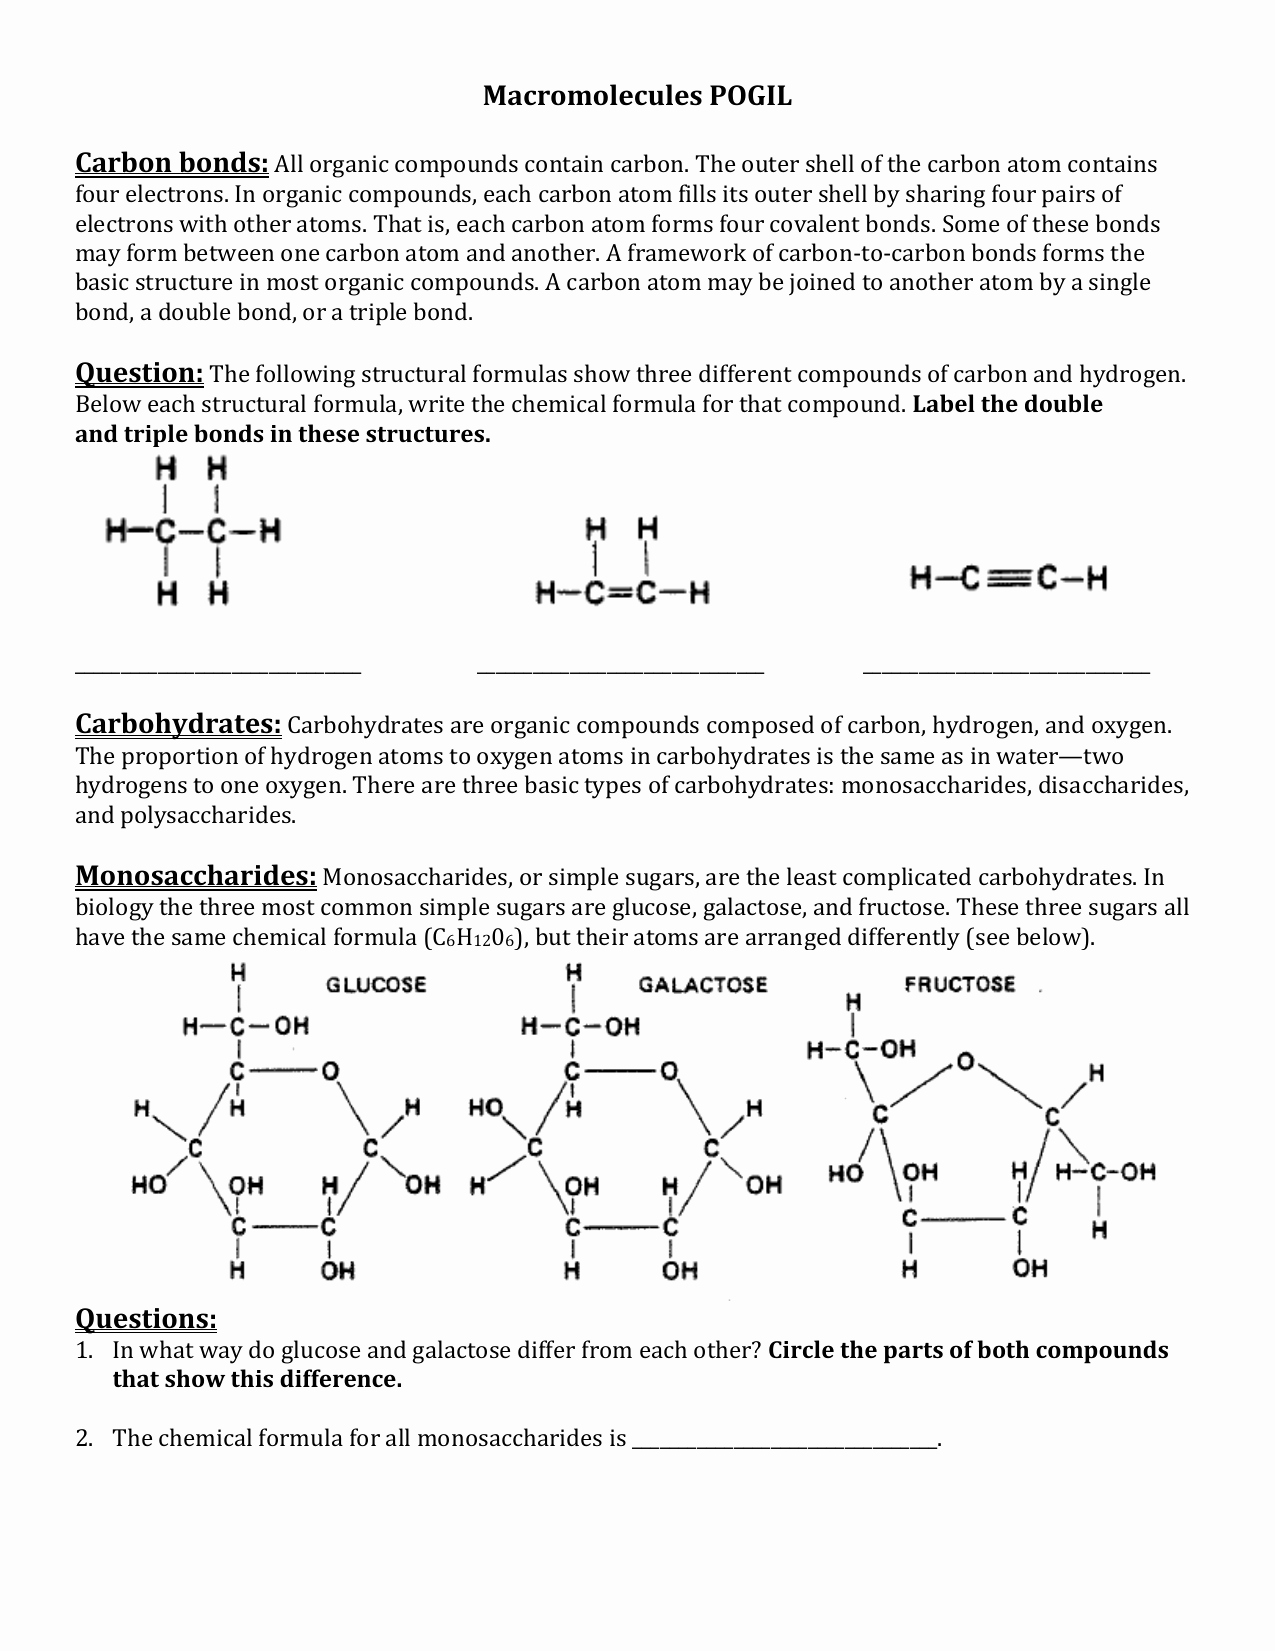 Macromolecules Worksheet #2 Answers Elegant Elements and Macromolecules In organisms Worksheet Answers